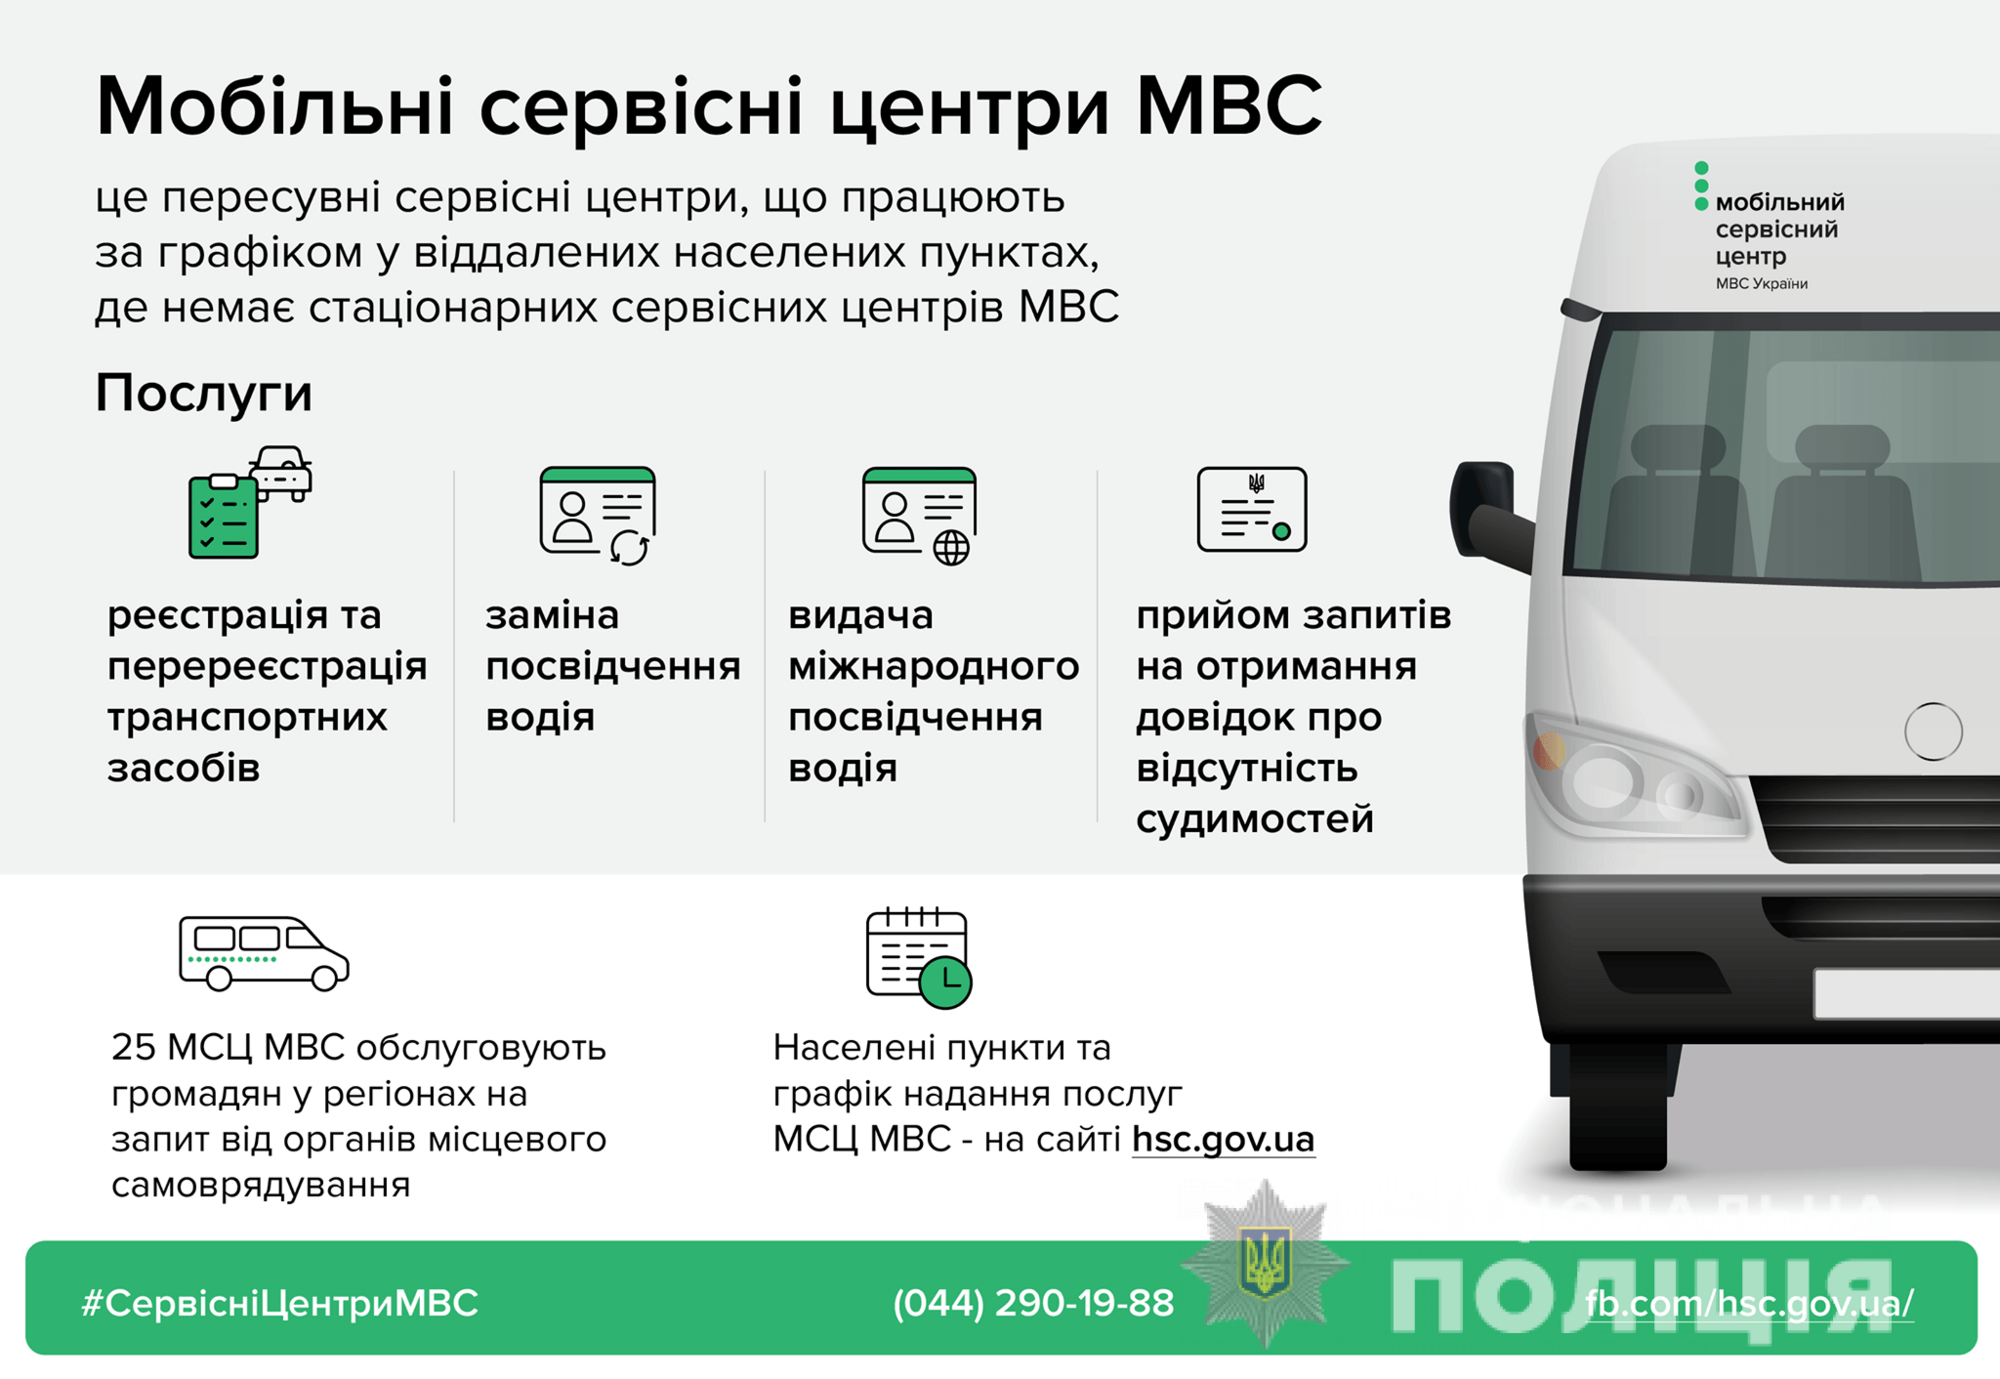 23 липня мобільний сервісний центр МВС надаватиме послуги в Любашівці